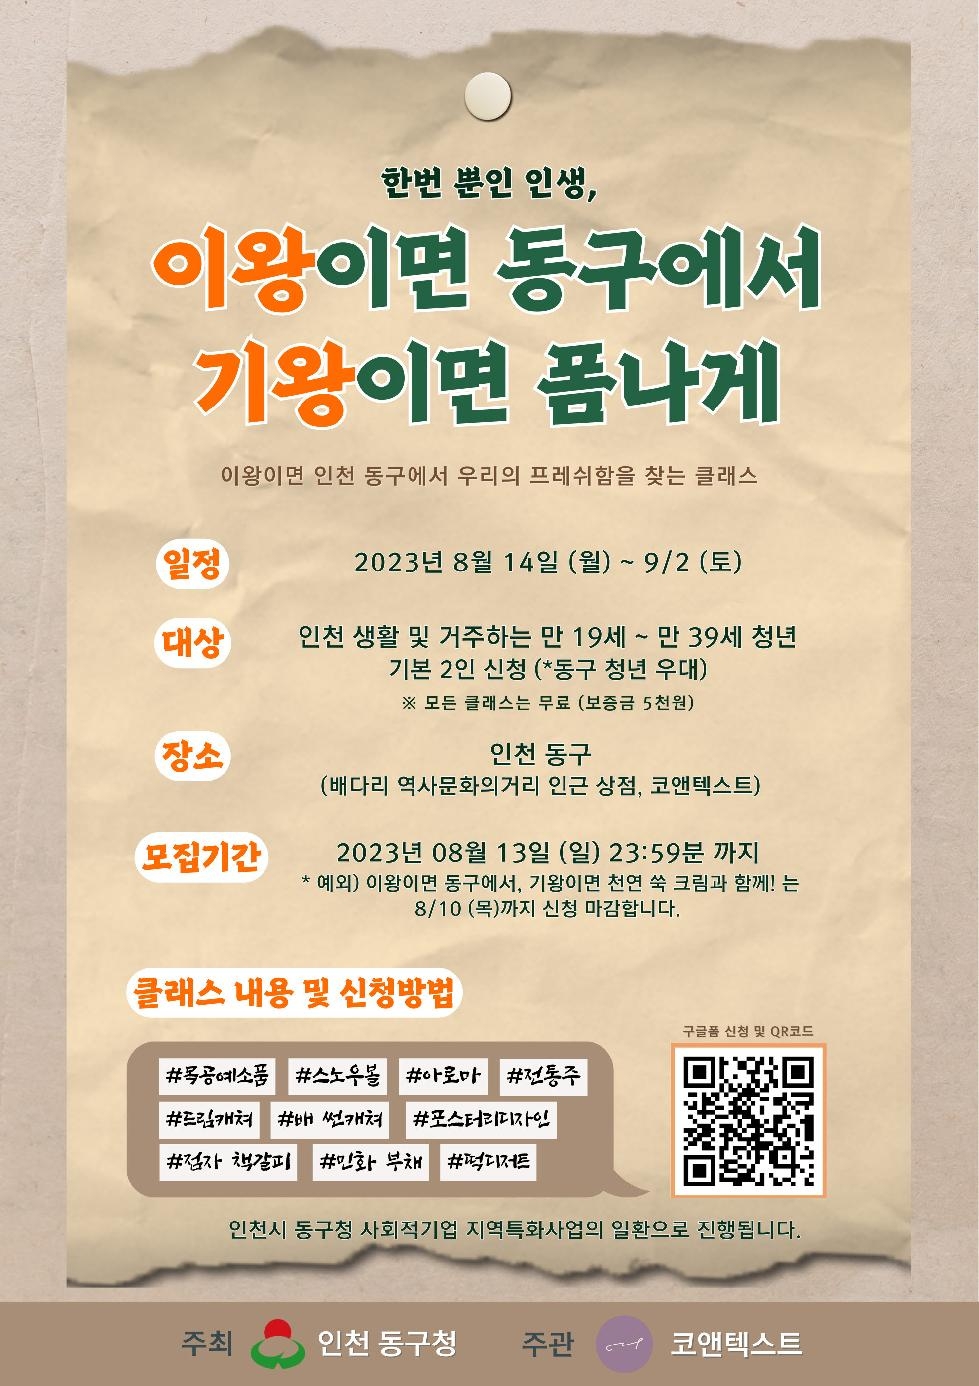 인천 동구, 사회적경제기업과 지역 예술인 체험프로그램 운영